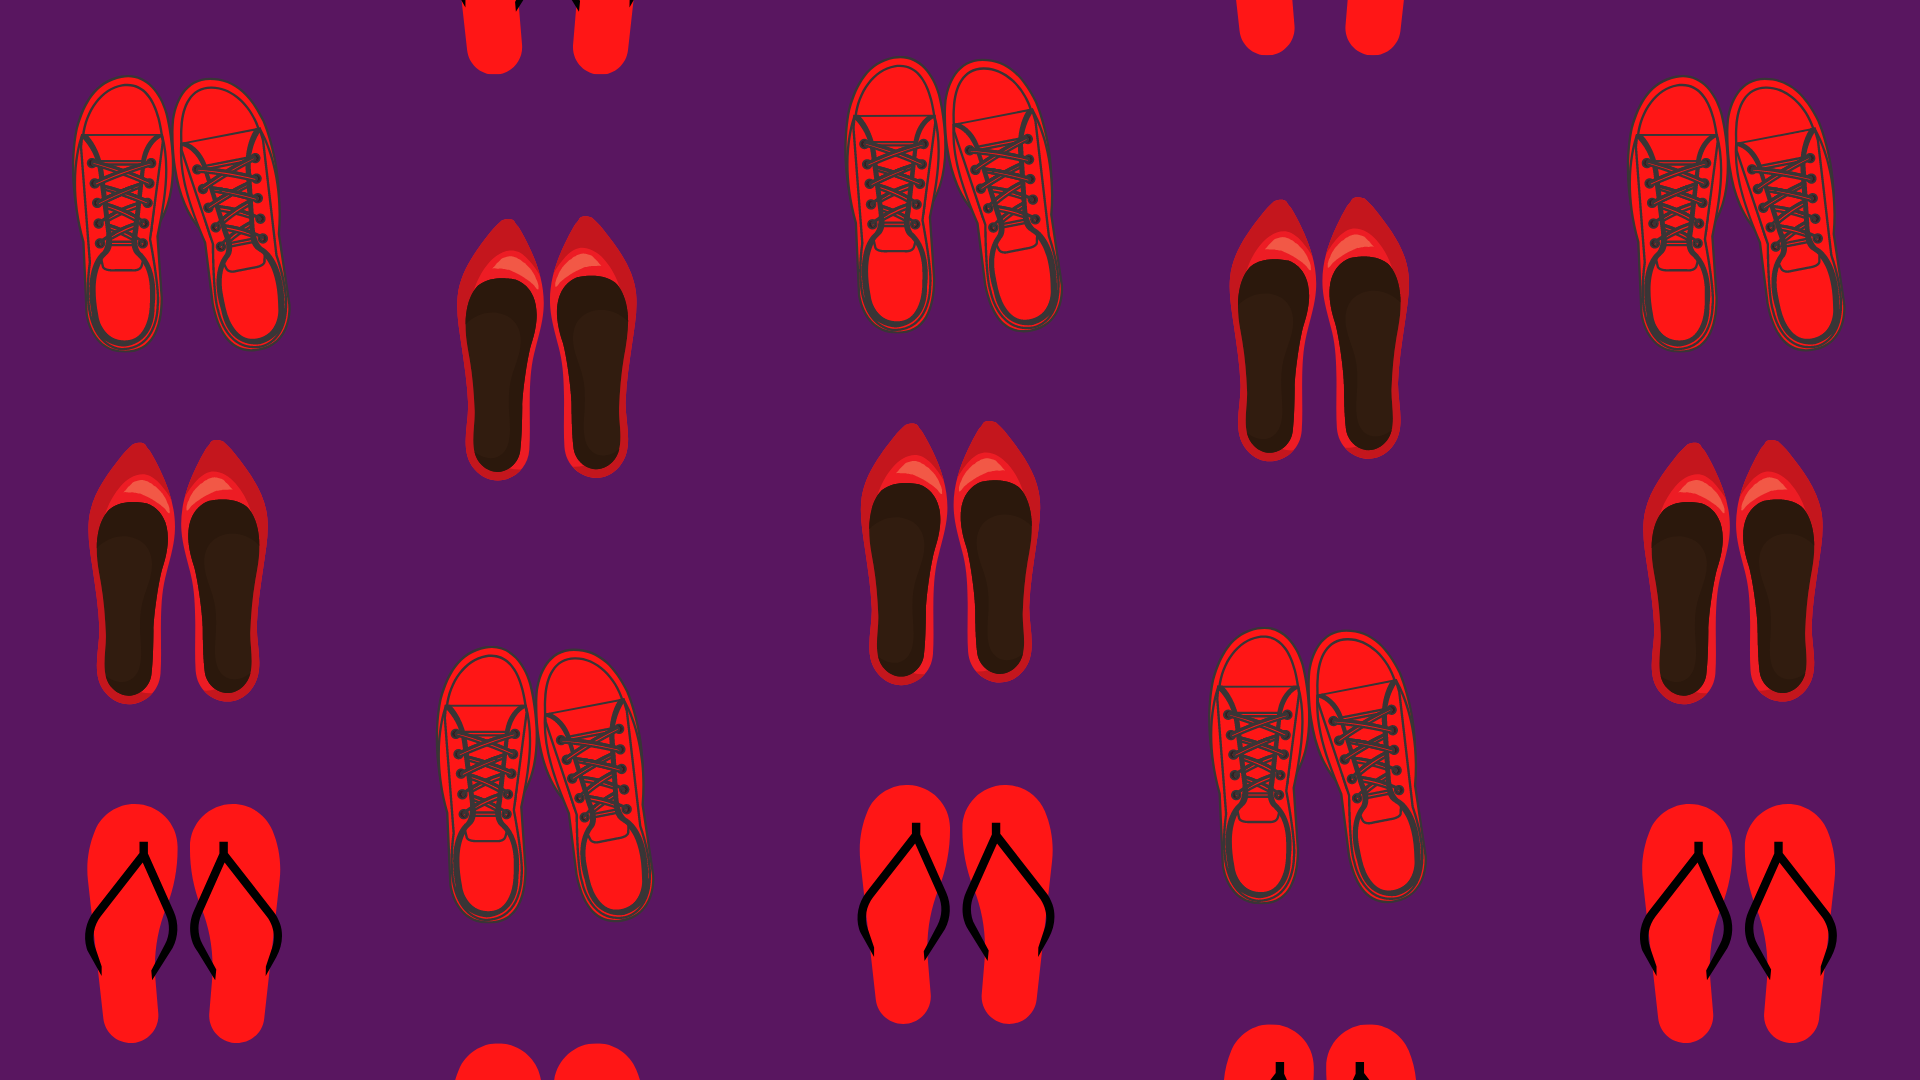 iconographie représentant des paires de chaussures rouges